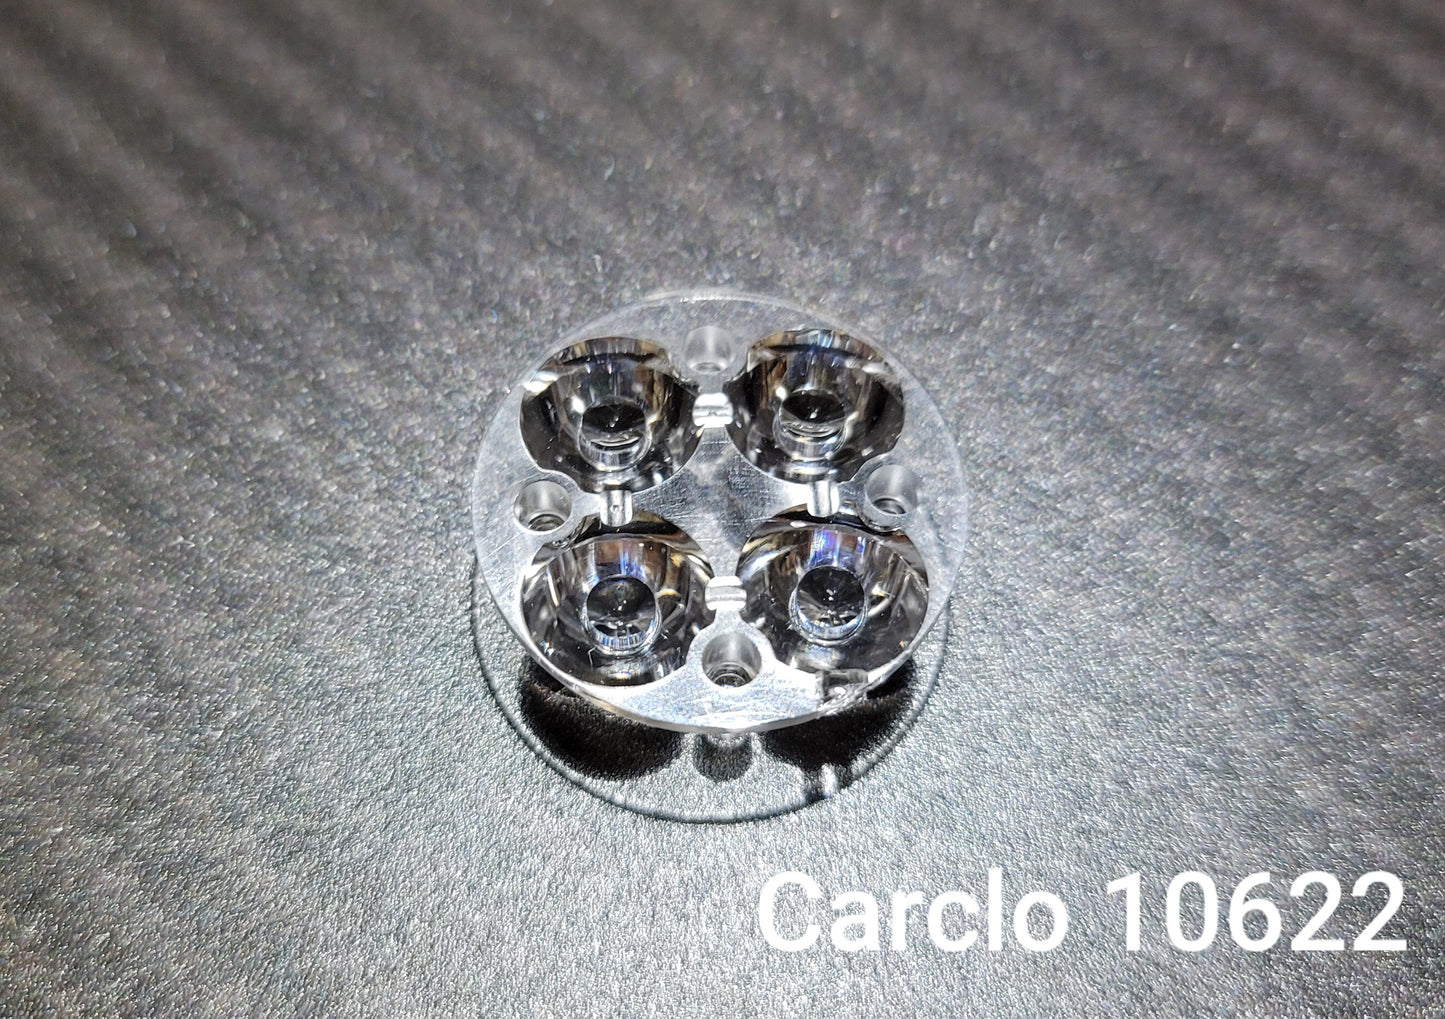 Emisar/Noctigon Replacement Glass TIR Optics CARCLO 10622 STANDARD OPTICS